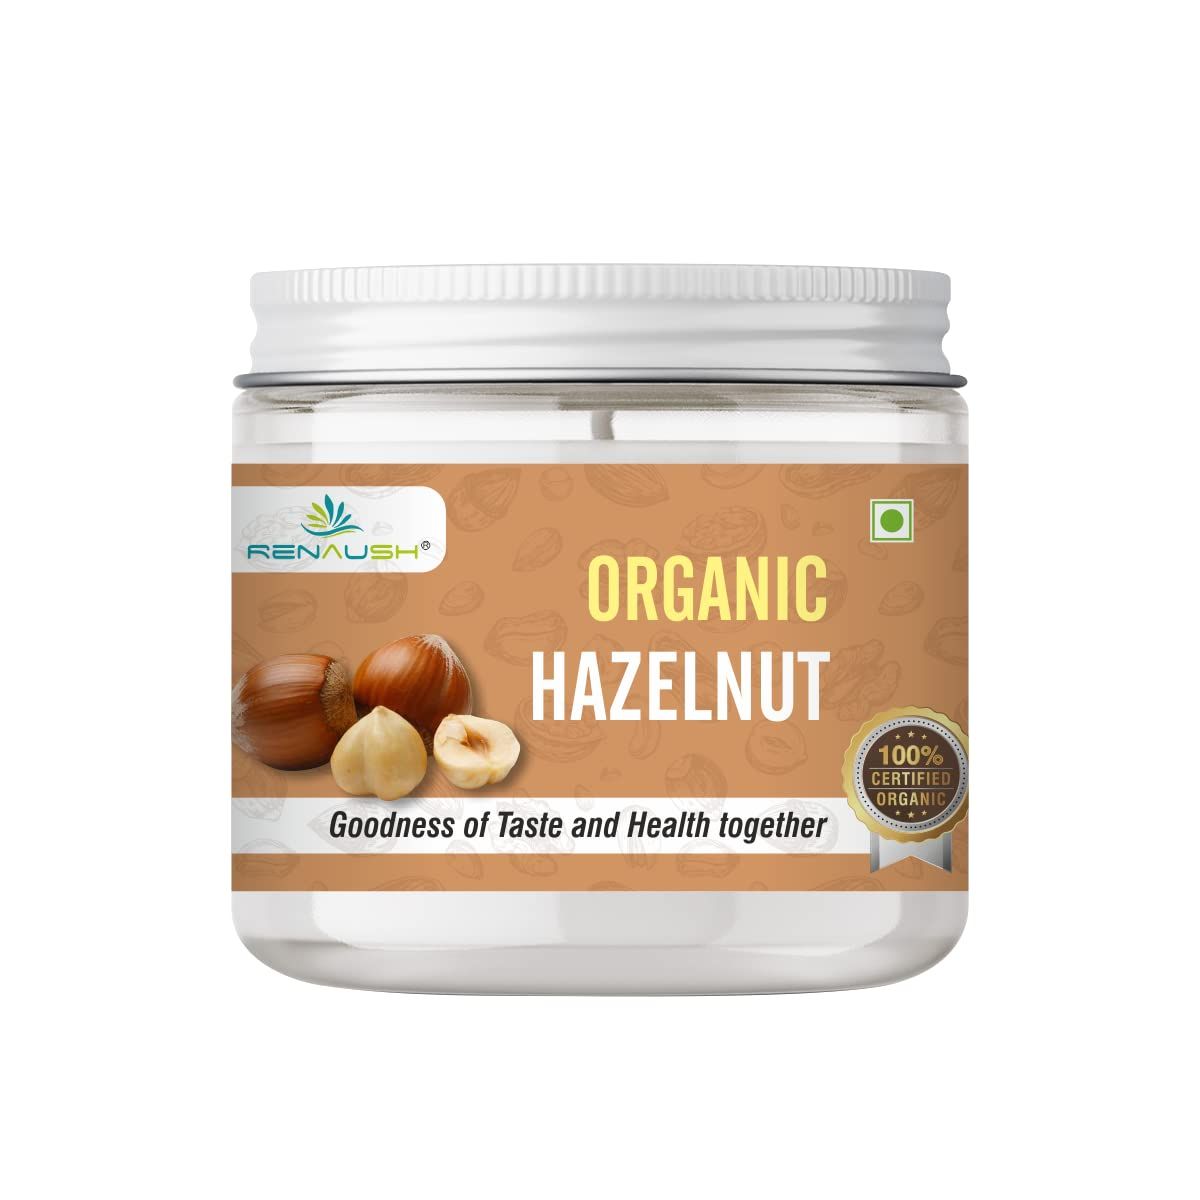 RENAUSH Organic Hazelnuts Image